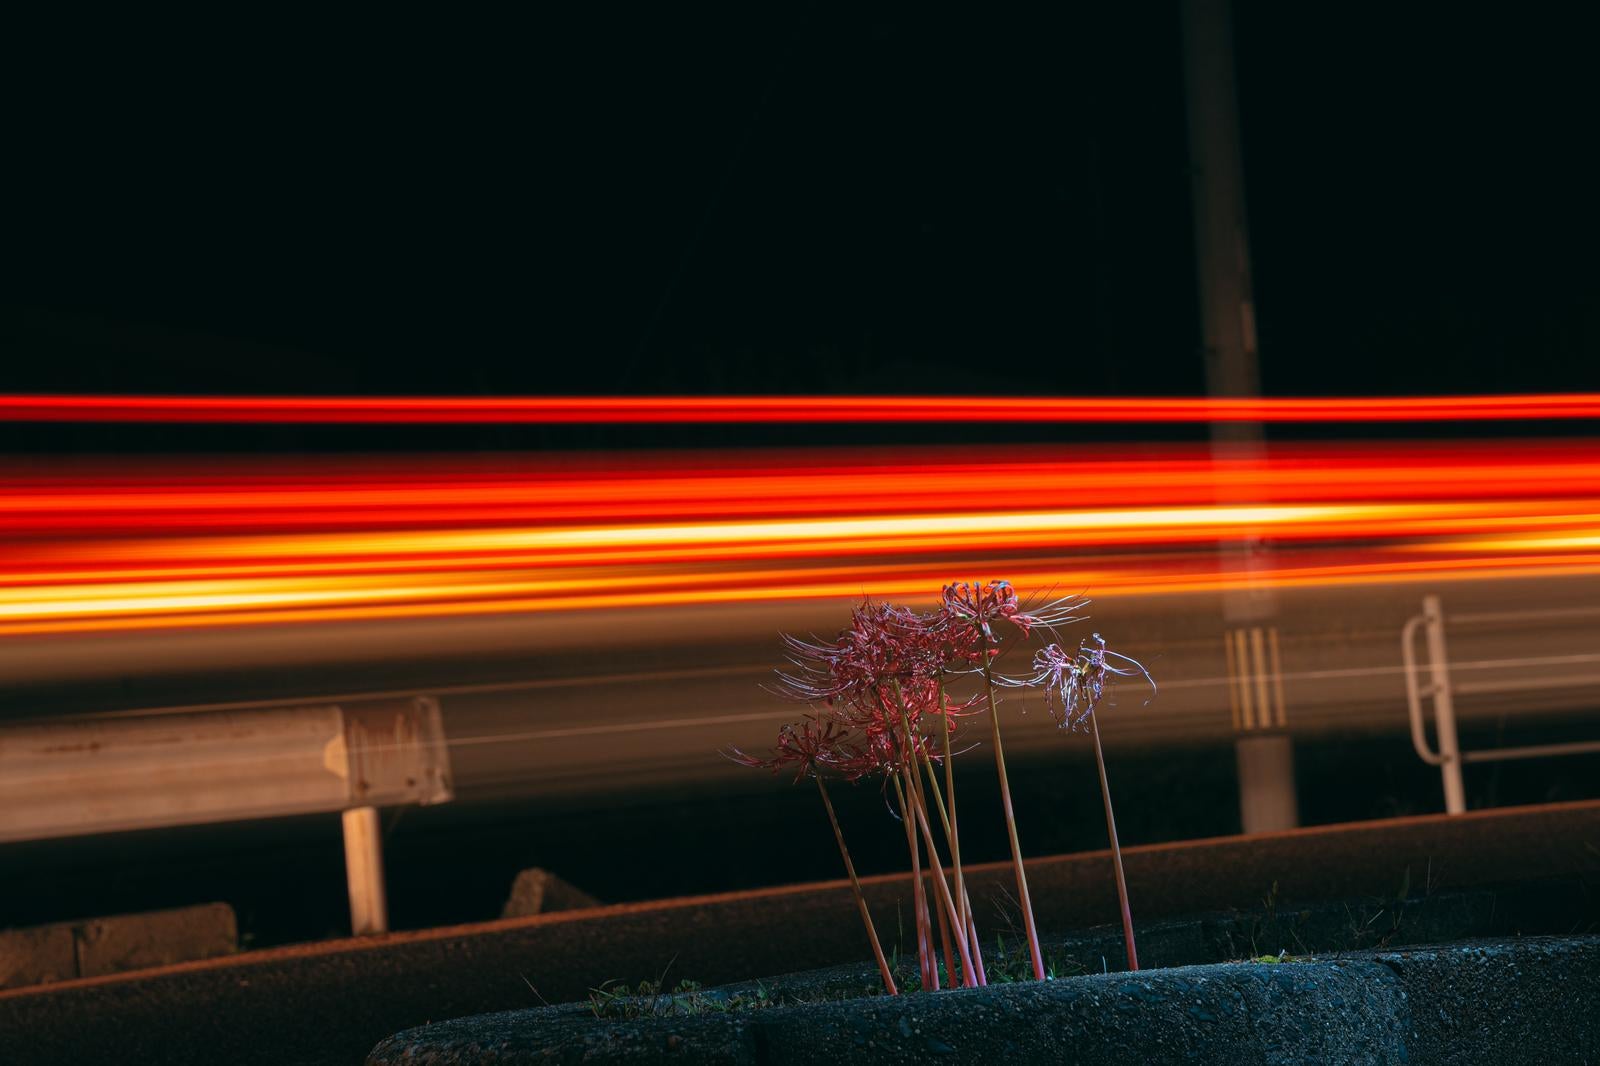 「夜の赤い光線とガード横の彼岸花」の写真